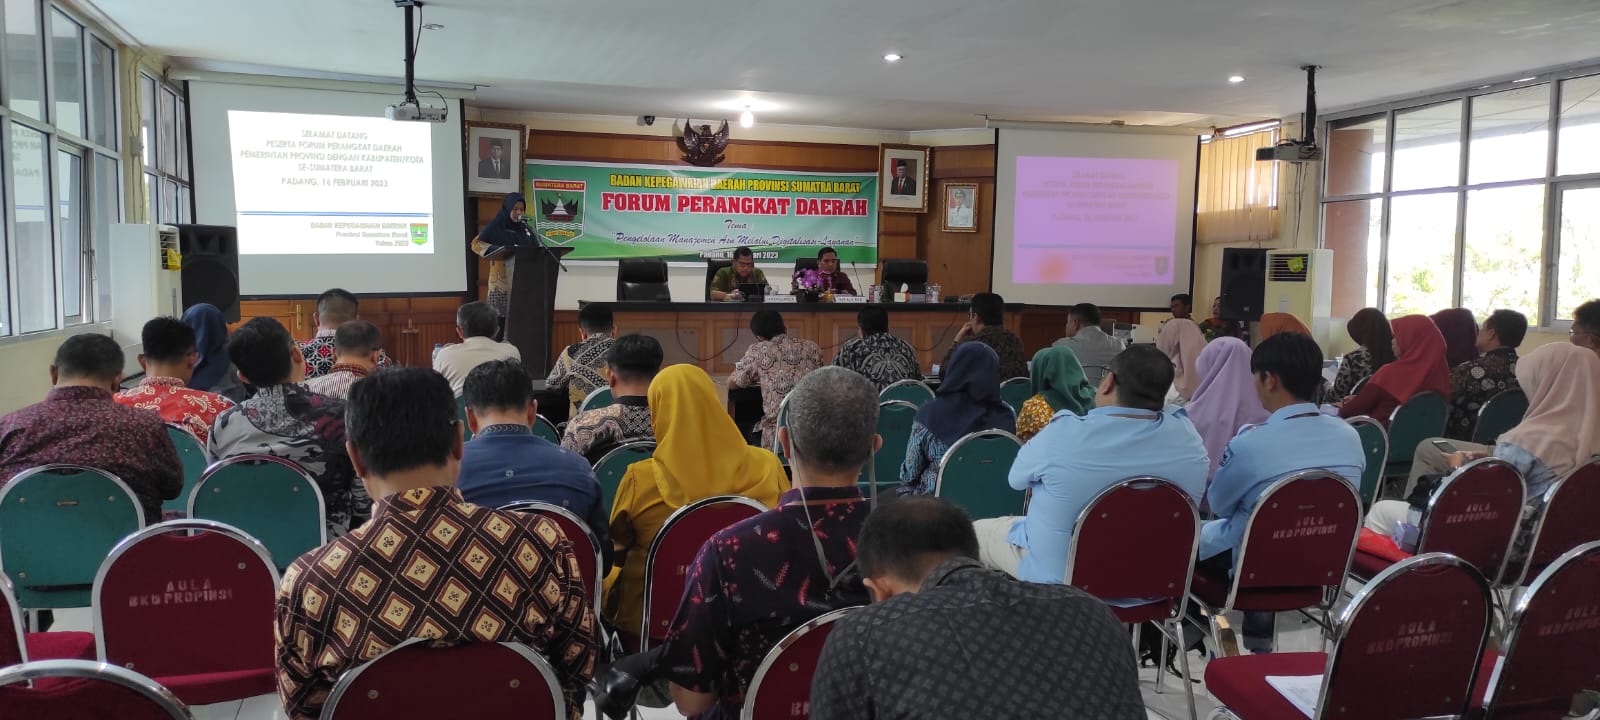 Kepala Badan Kepegawaian Daerah Prov. Sumatera Barat Membuka Acara Forum Perangkat Daerah